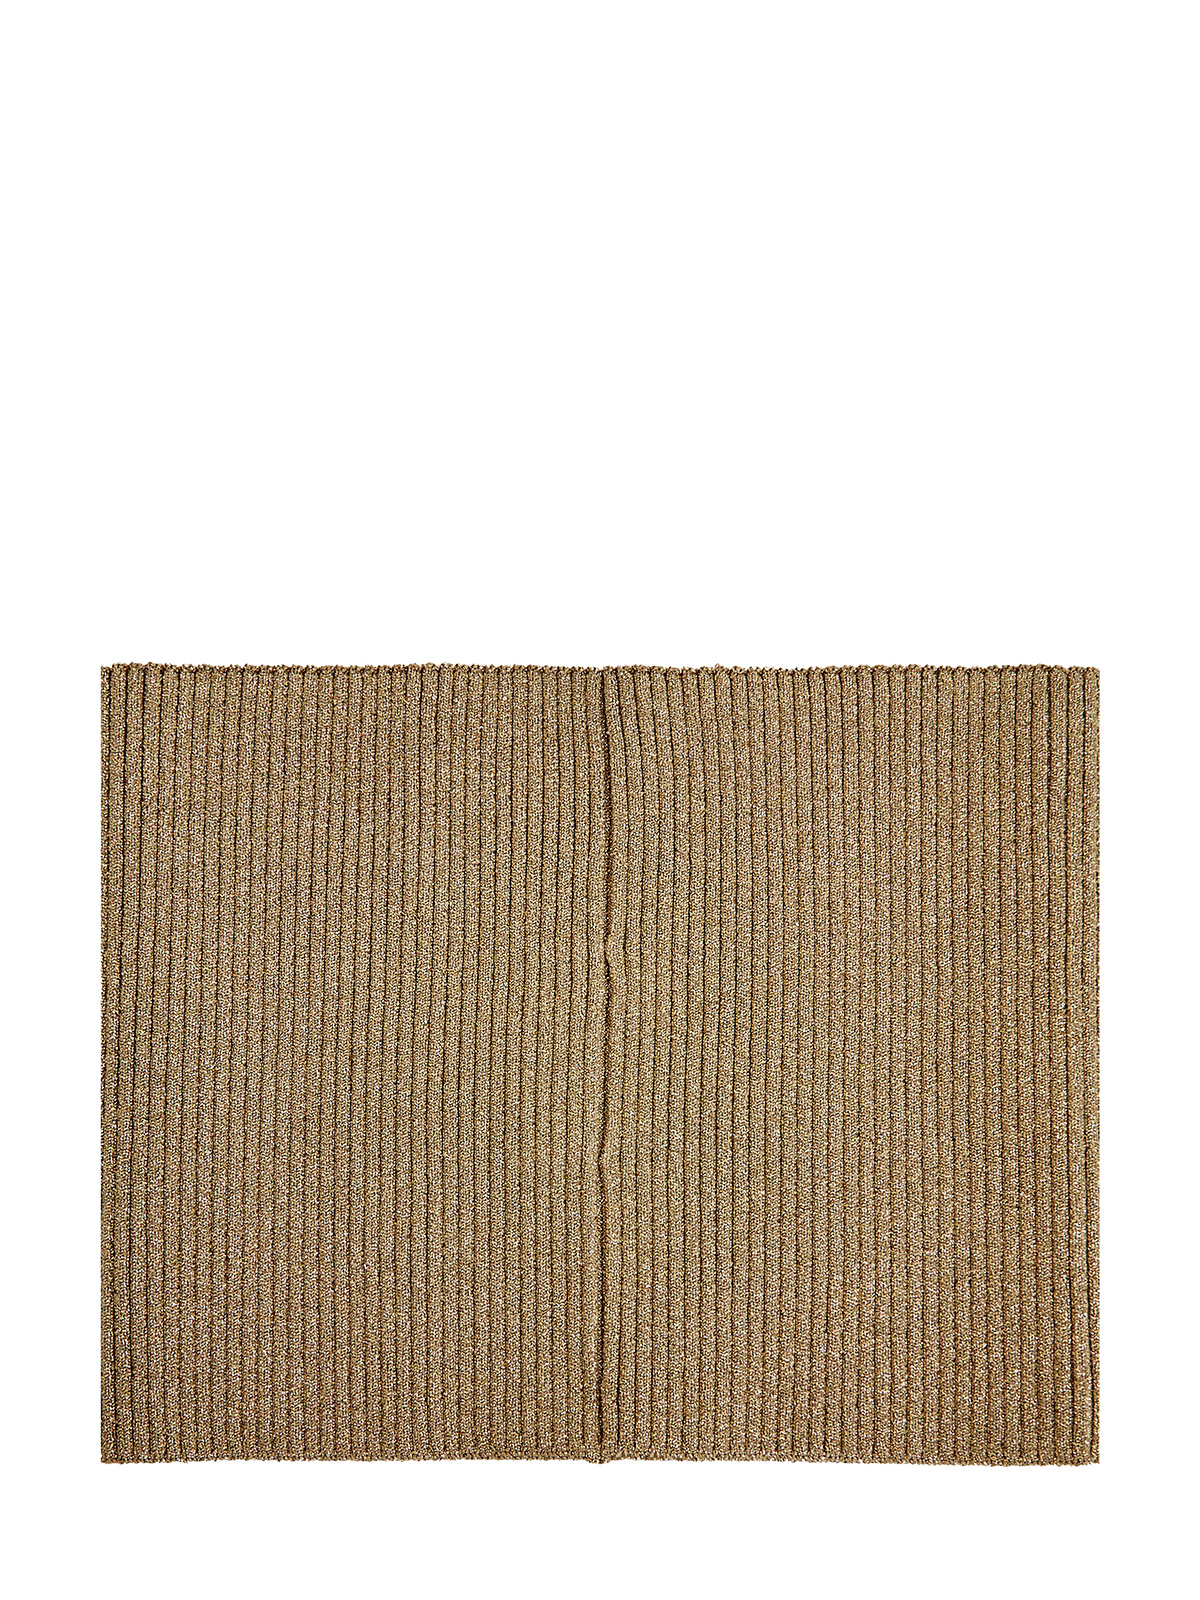 Широкий корсет английской вязки с металлизированным напылением FABIANA FILIPPI, цвет коричневый, размер 42;43;44;45 - фото 2